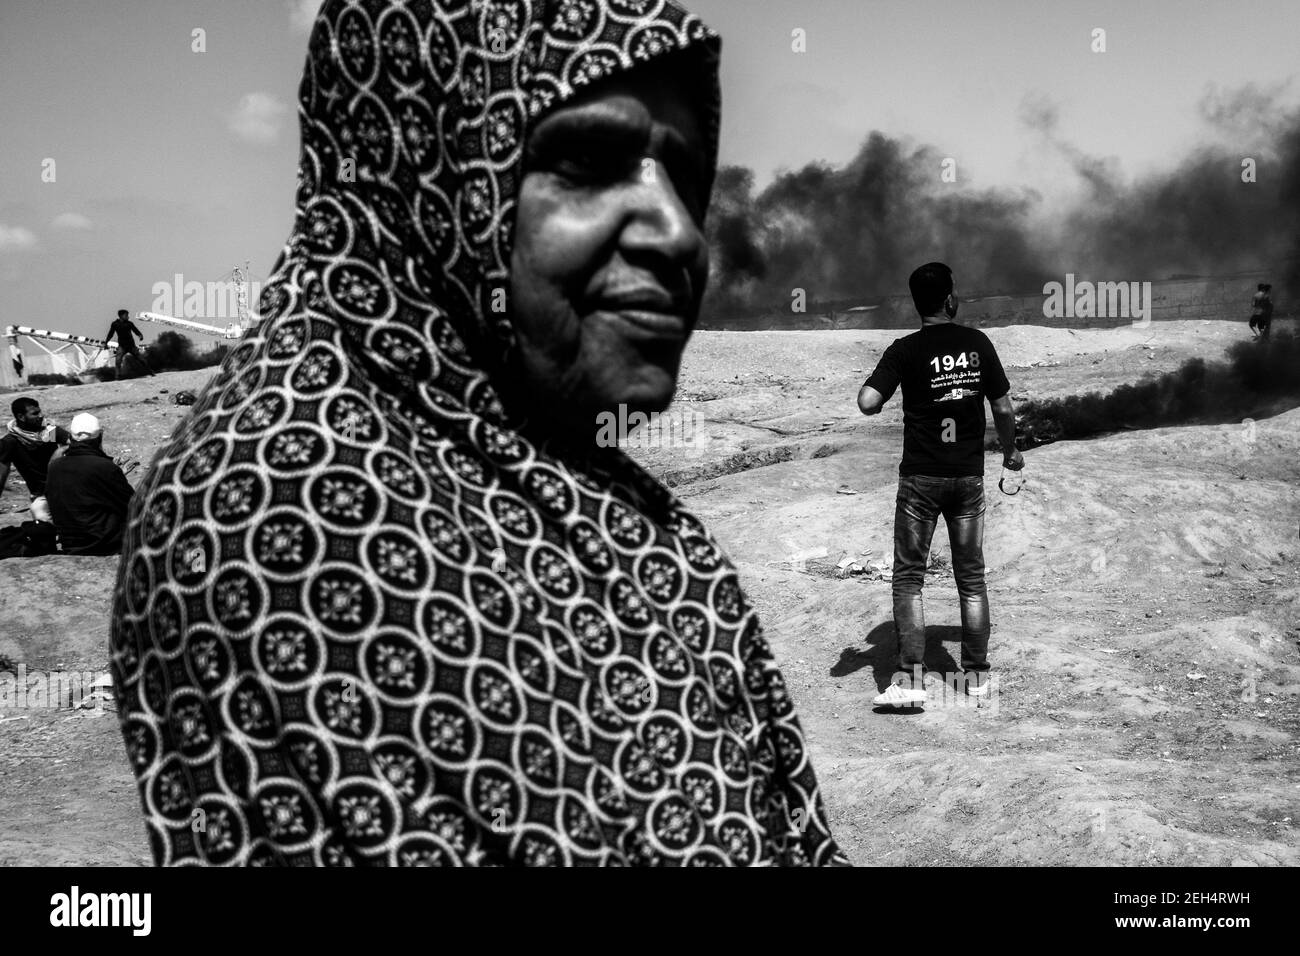 Eine Frau beobachtet die Zusammenstöße zwischen palästinensischen Demonstranten und der israelischen Armee. Die Spannungen entlang der Grenze zwischen Gaza und Israel sind nach mehr als einem Monat wöchentlicher Massenproteste in der Nähe der Barriere, bei denen 50 palästinensische Demonstranten getötet und mehr als 1.700 durch israelische Militärfeuer verletzt wurden, hoch. Die Hamas-Führer in Gaza haben versprochen, dass die Märsche fortgesetzt werden, bis die zehnjährige israelische Blockade des Territoriums aufgehoben wird. Proteste werden auch am 14. Und 15. Mai erwartet, dem Tag, an dem die Palästinenser Yawm an-Nakba oder den "Tag der Katastrophe" zum Gedenken an den Jahrestag ihrer Massenentminierung begehen werden Stockfoto